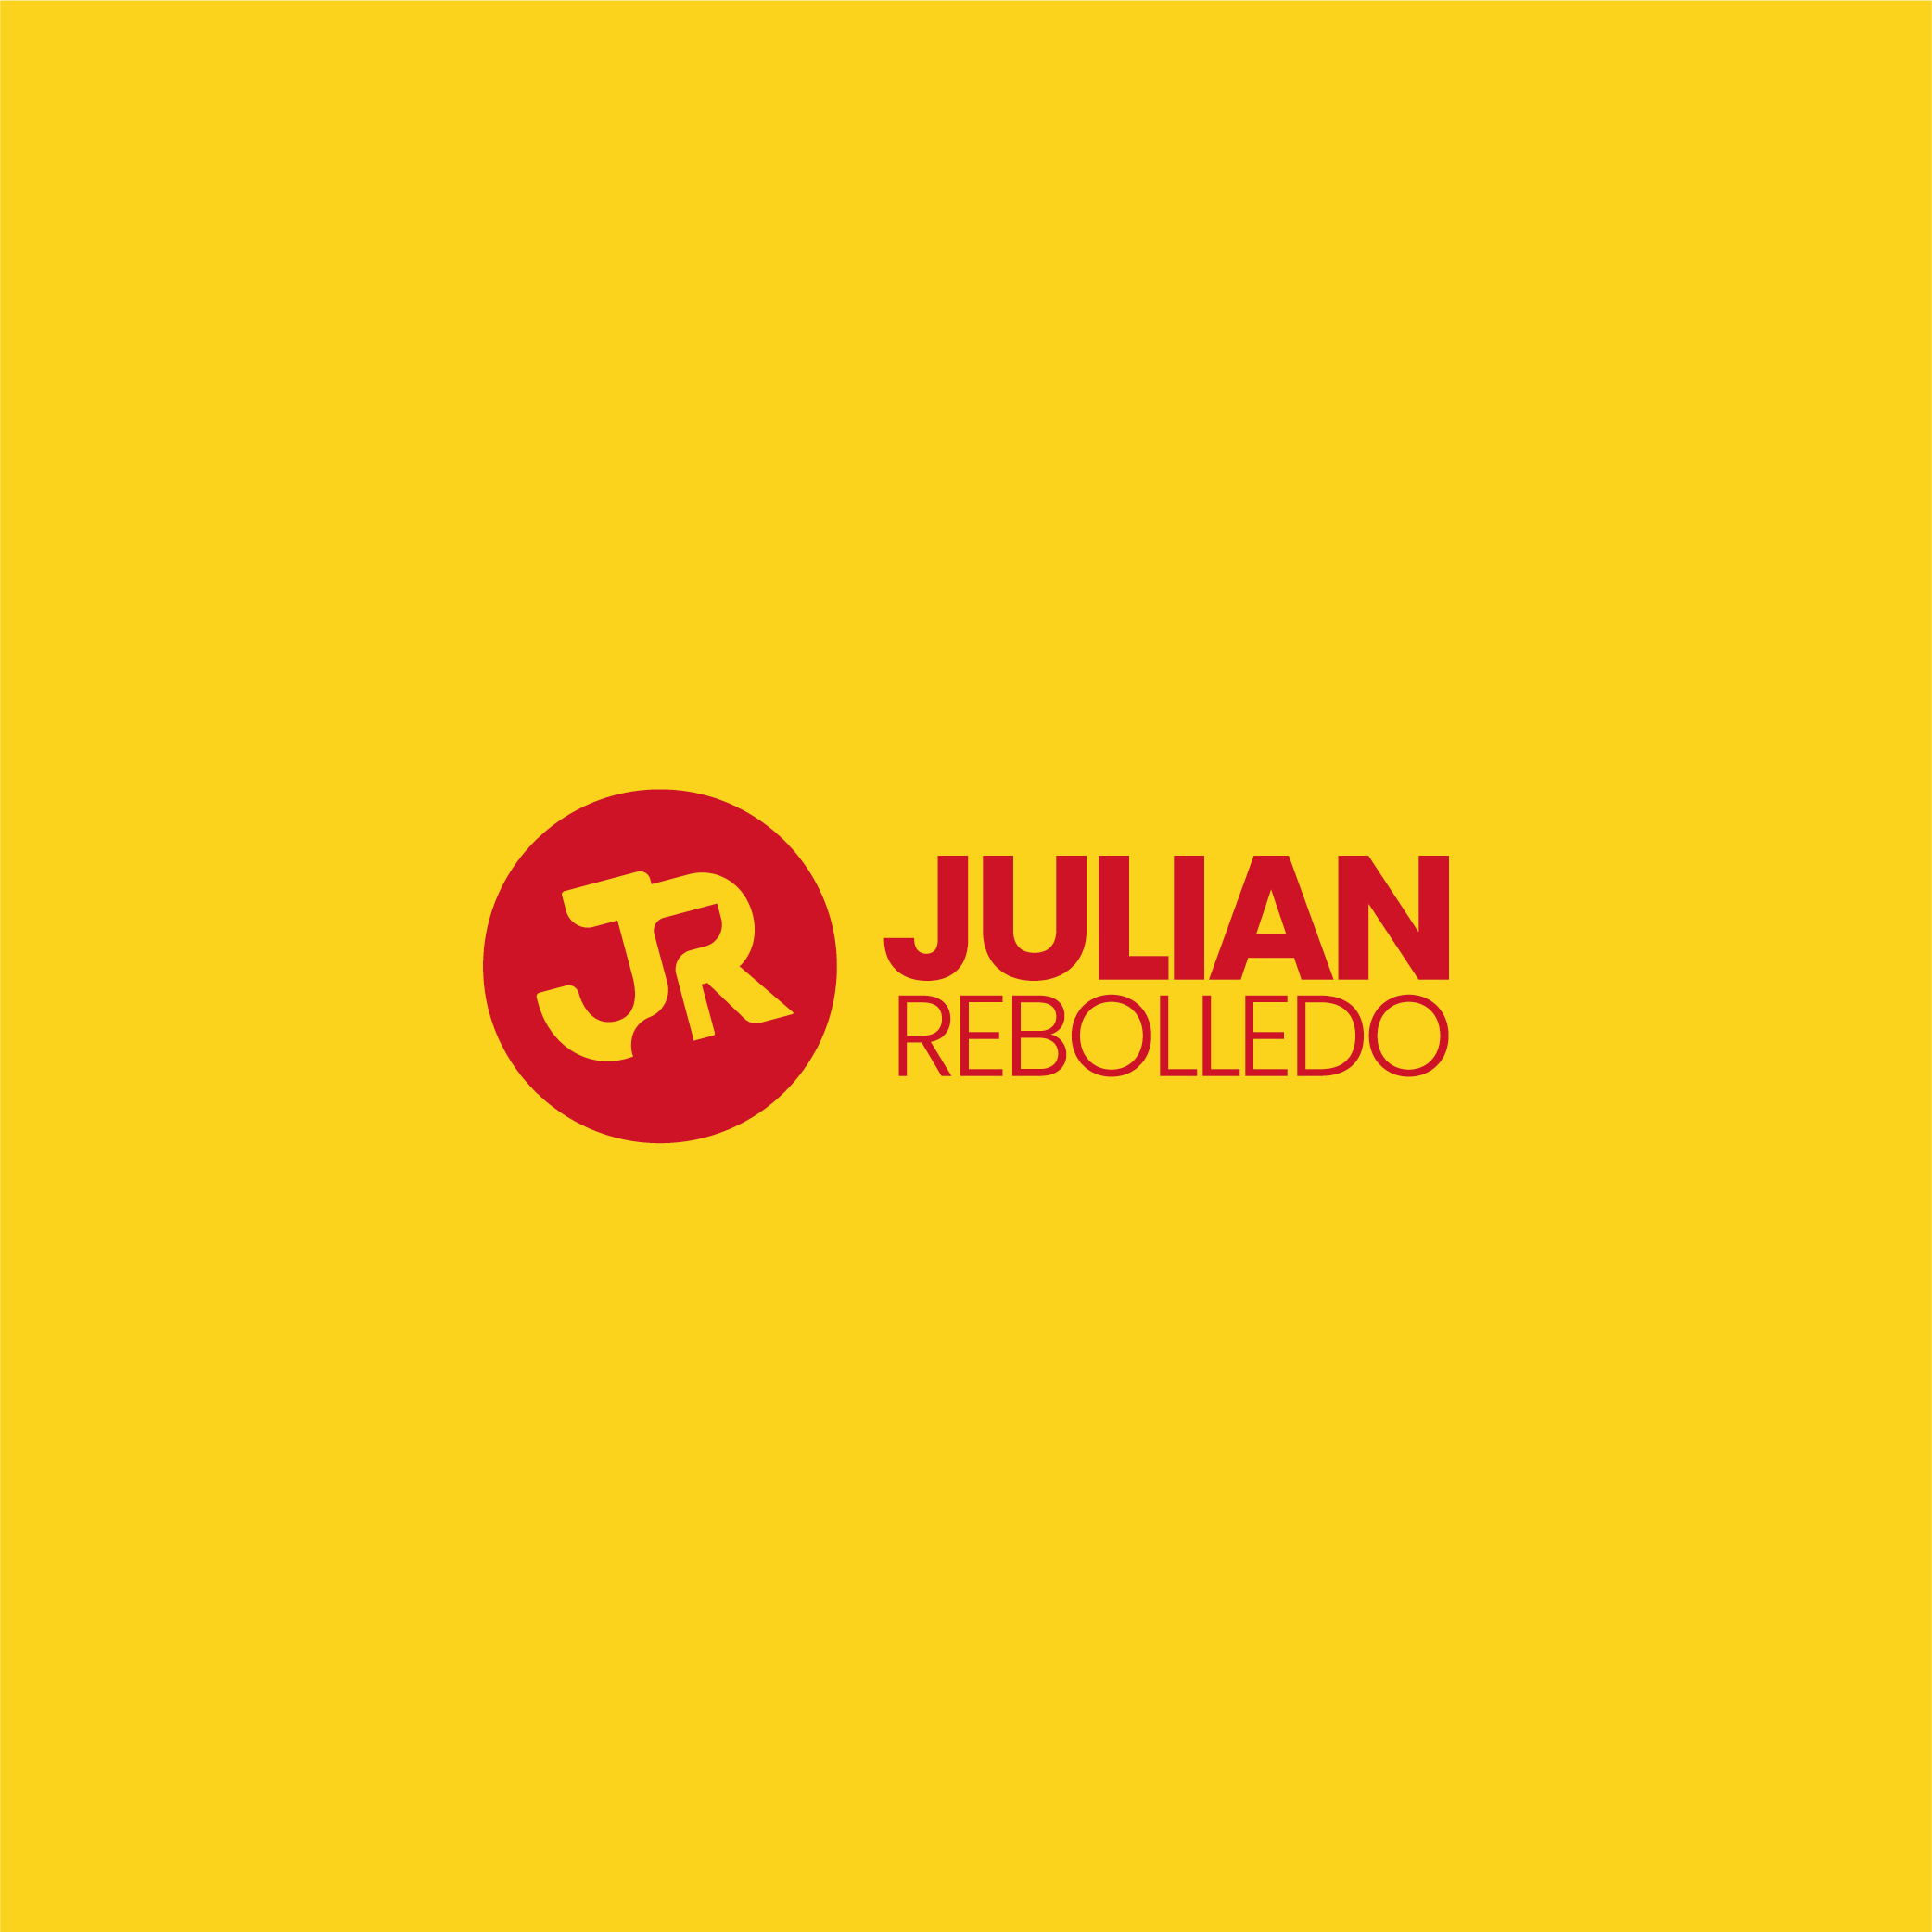 Julian Rebolledo Logo Design - Apollo Creative Co